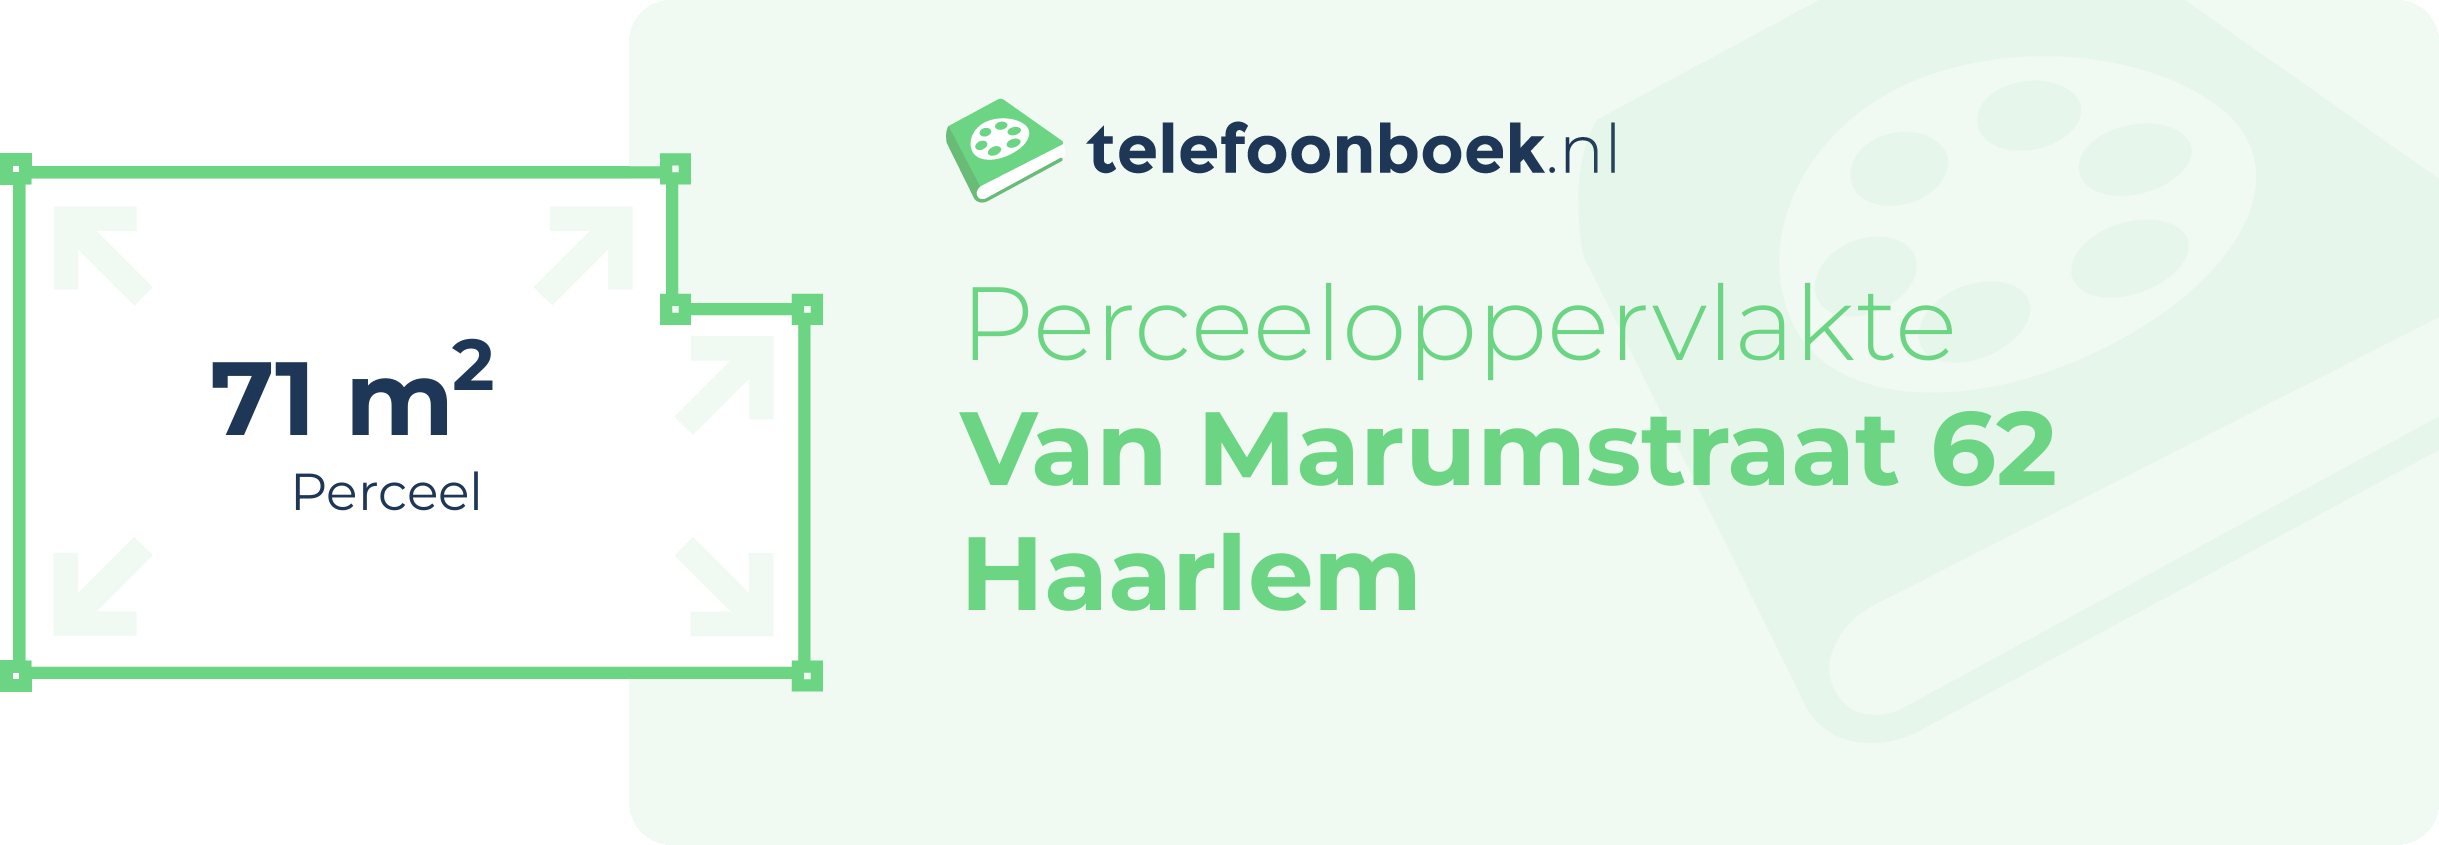 Perceeloppervlakte Van Marumstraat 62 Haarlem